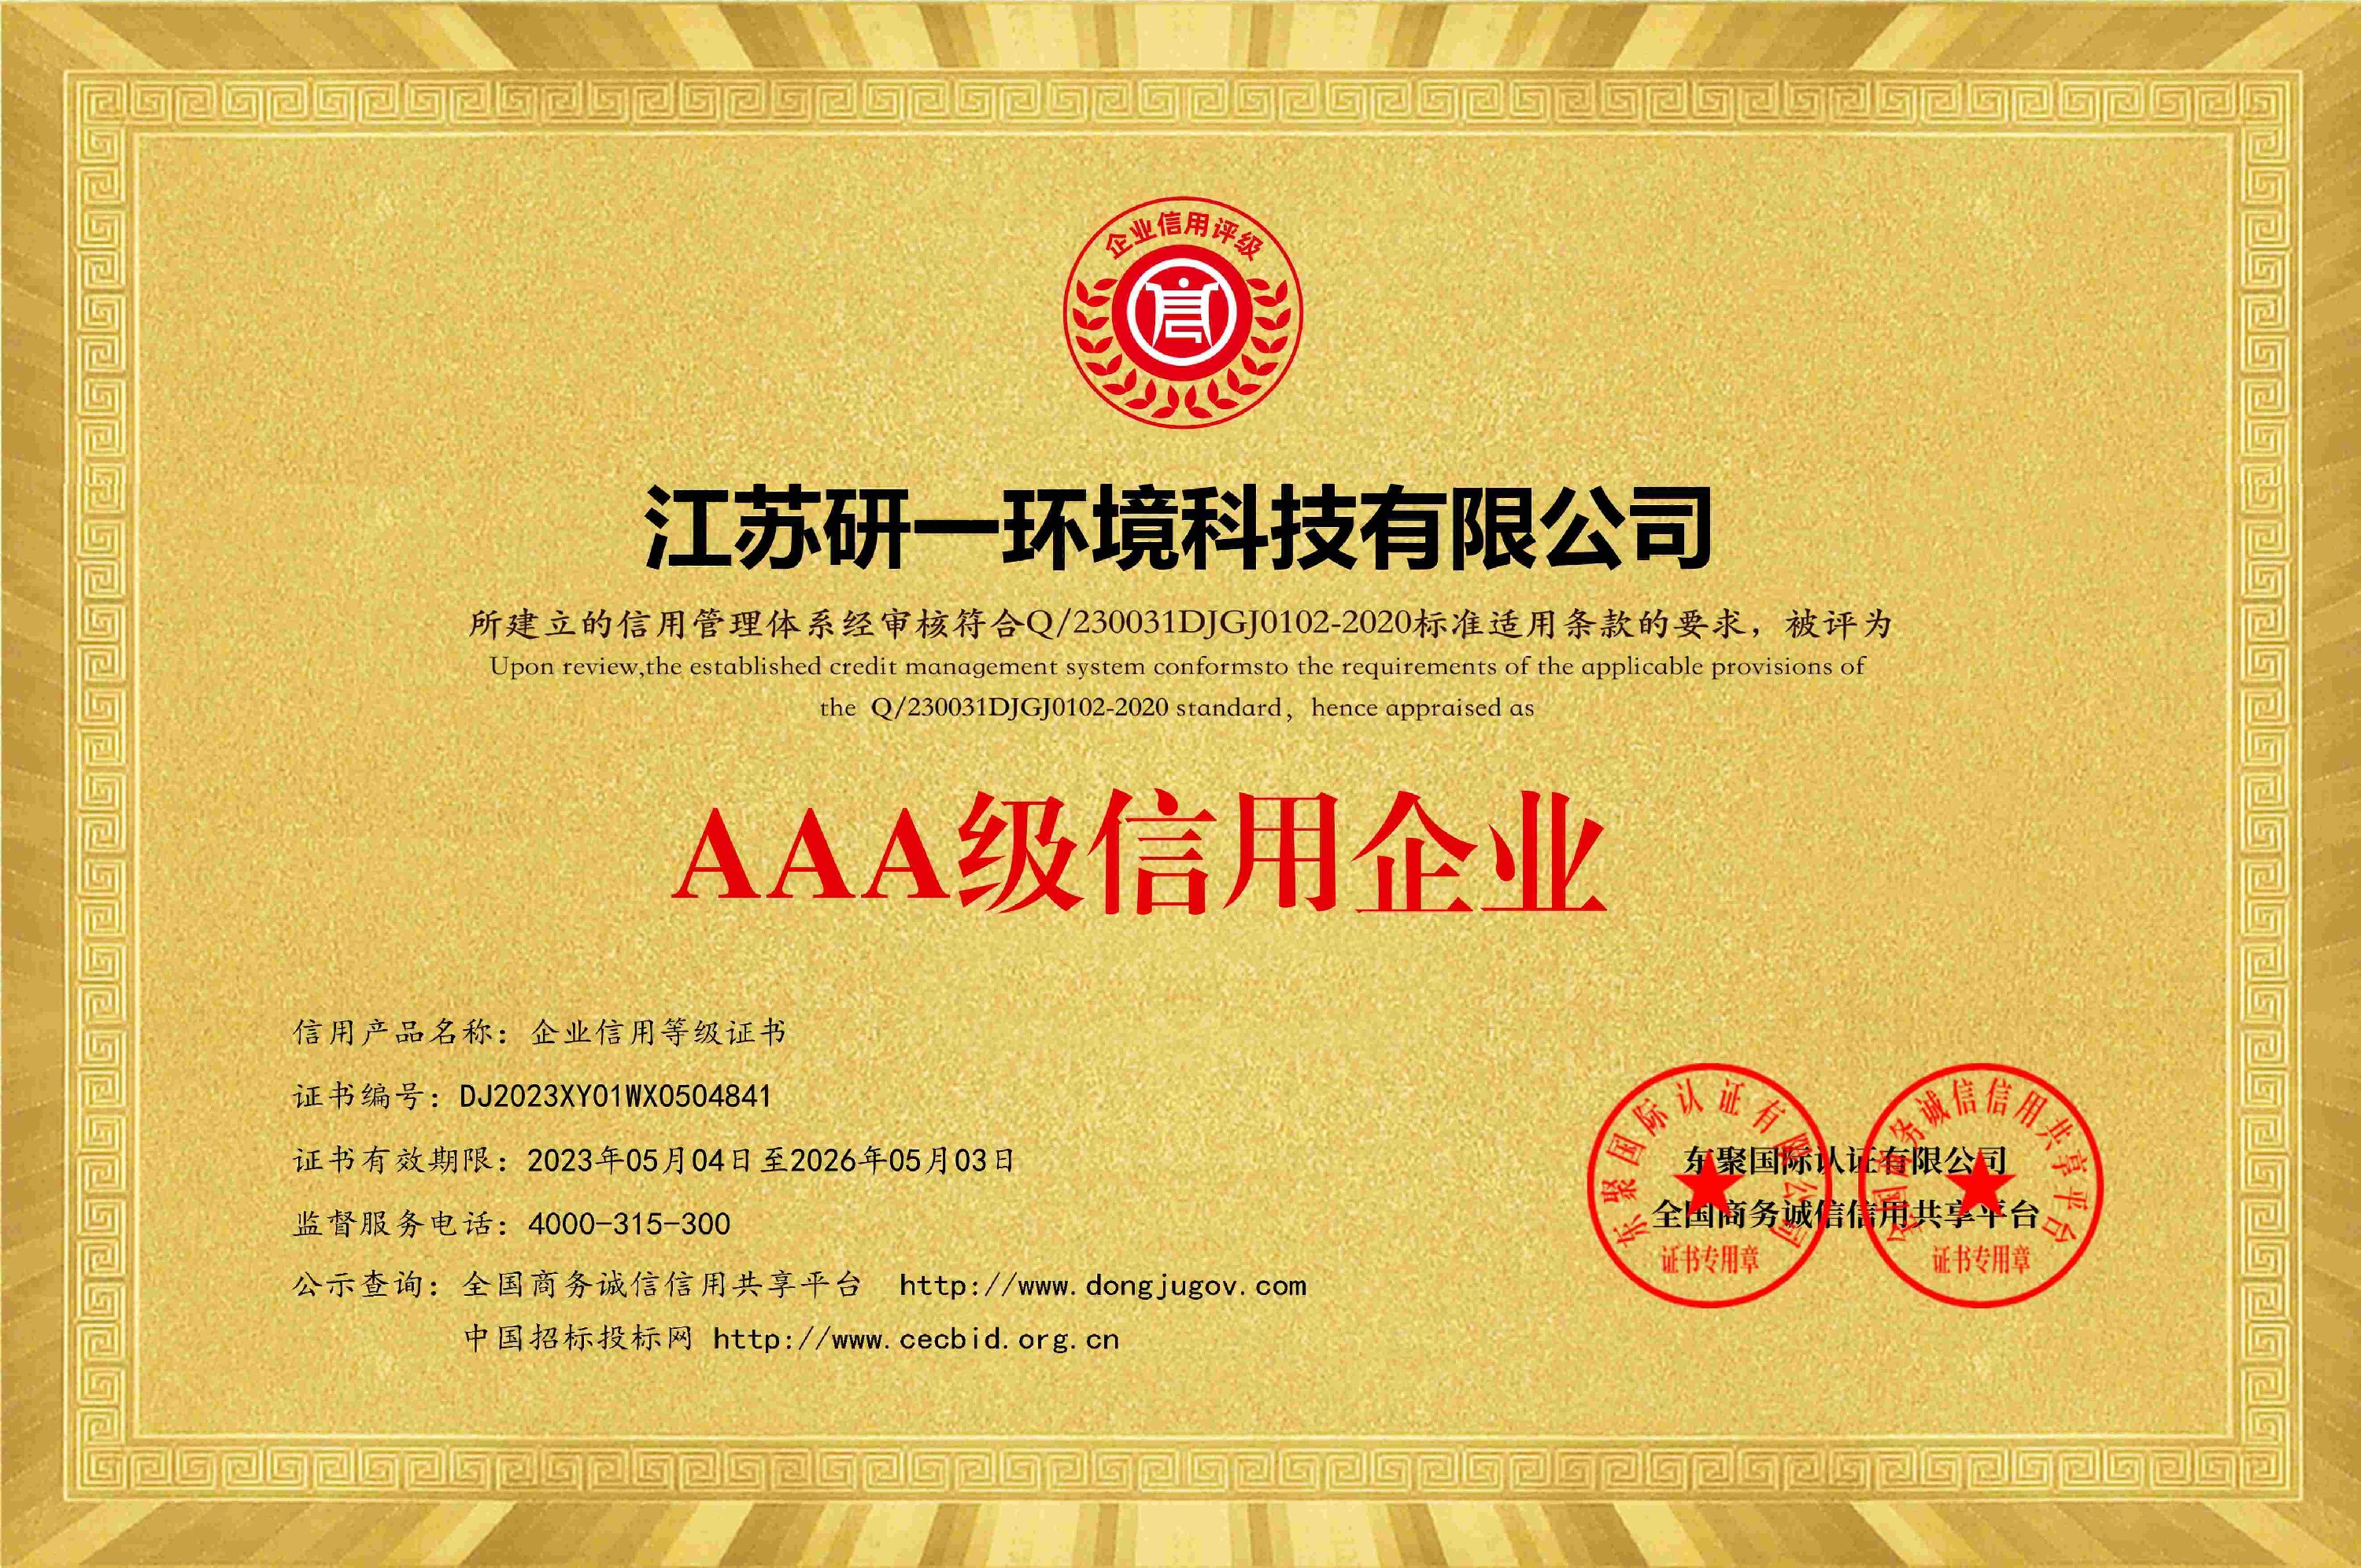 中国质量安全管理AAA级信用企业